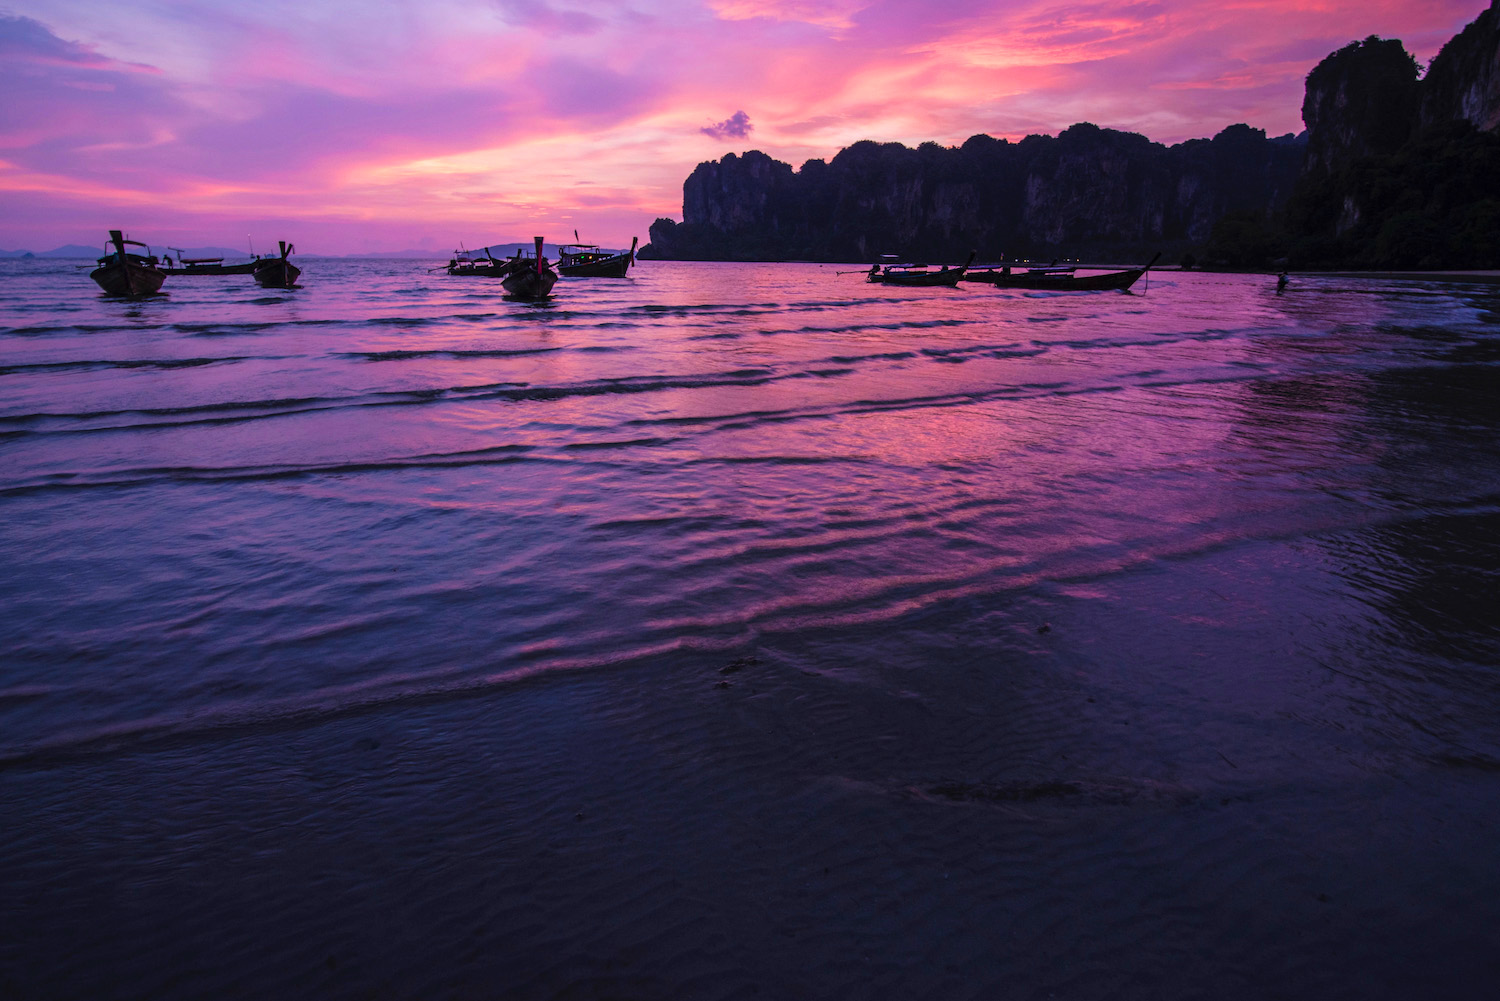 Railay Beach Sunset: A Magical Experience in a Thai Paradise - A